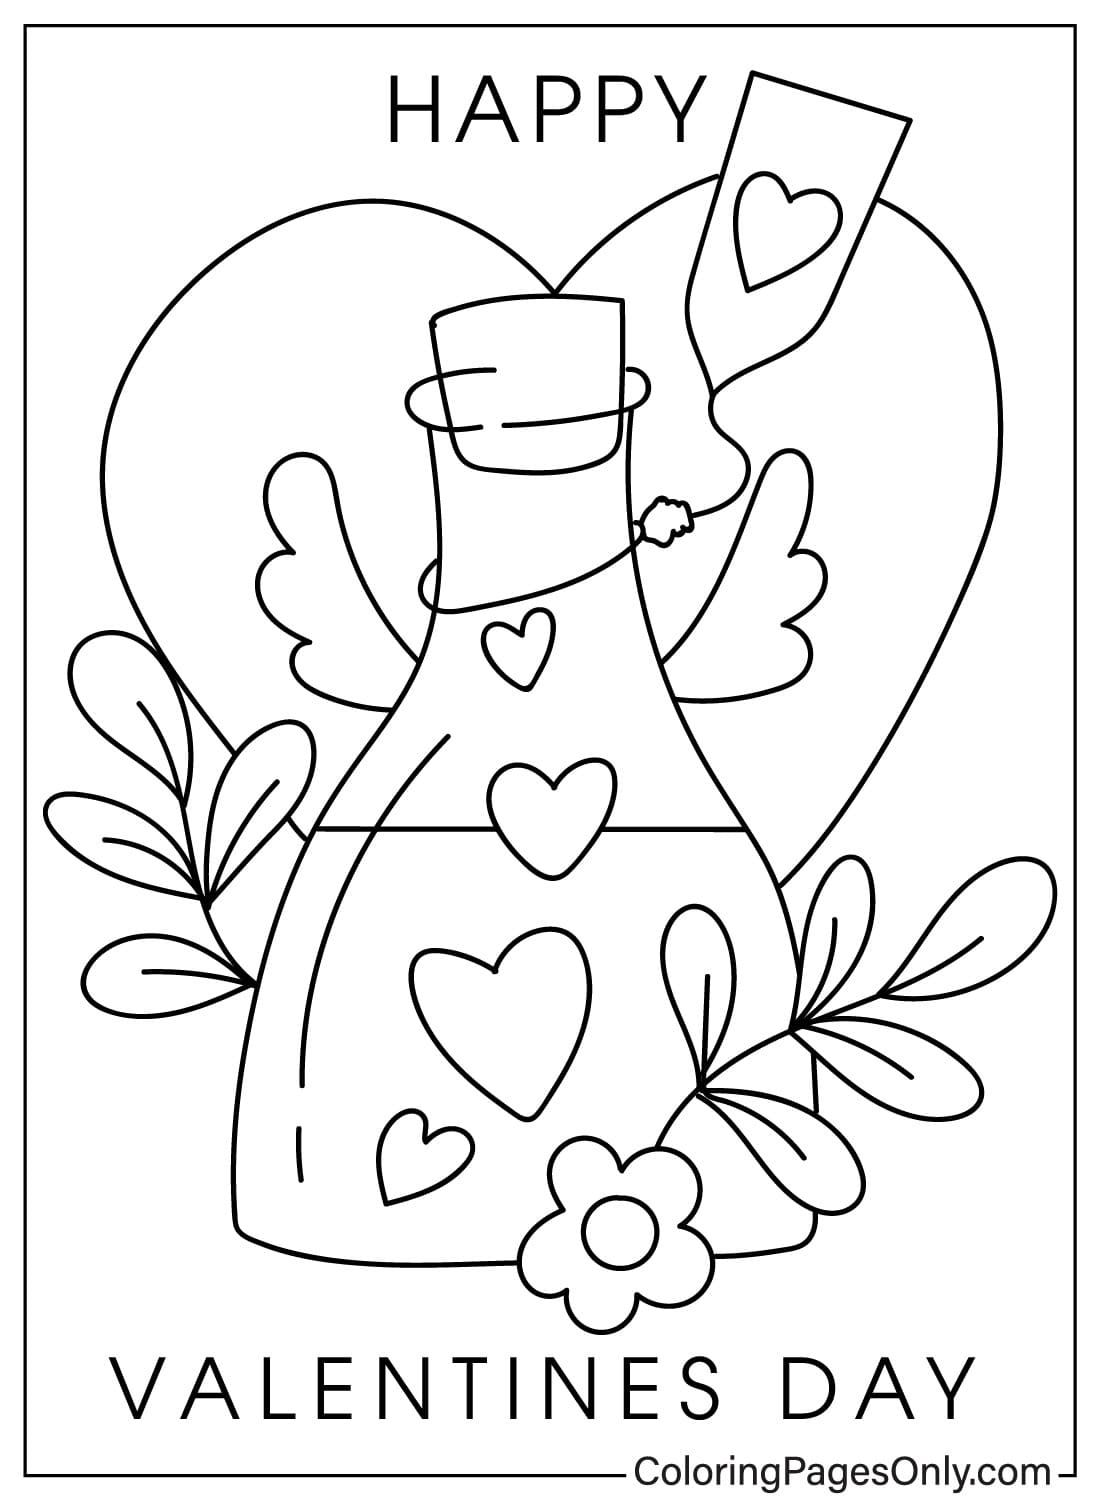 Página para colorear de tarjetas del día de San Valentín para imprimir gratis de Tarjetas del día de San Valentín